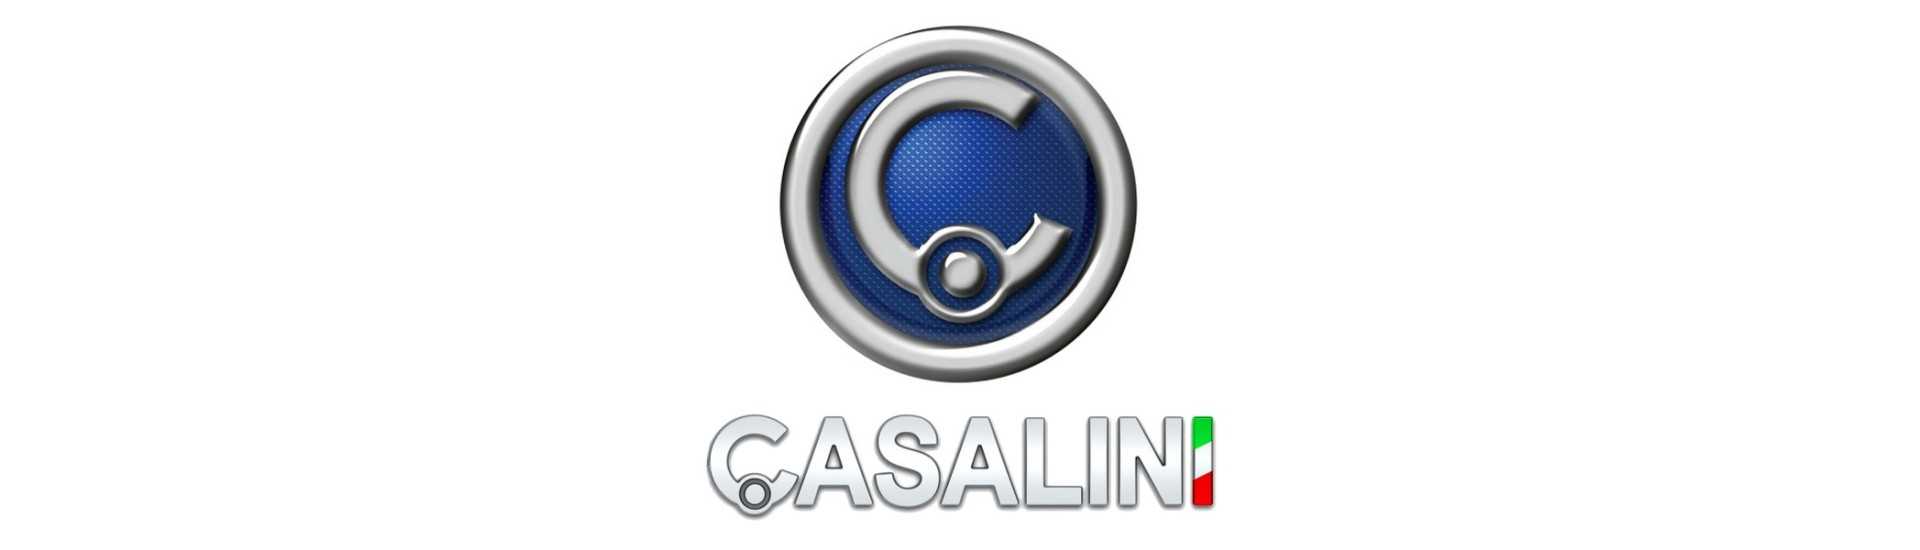 Piuliță roată la cel mai bun preț pentru o mașină fără permis Casalini